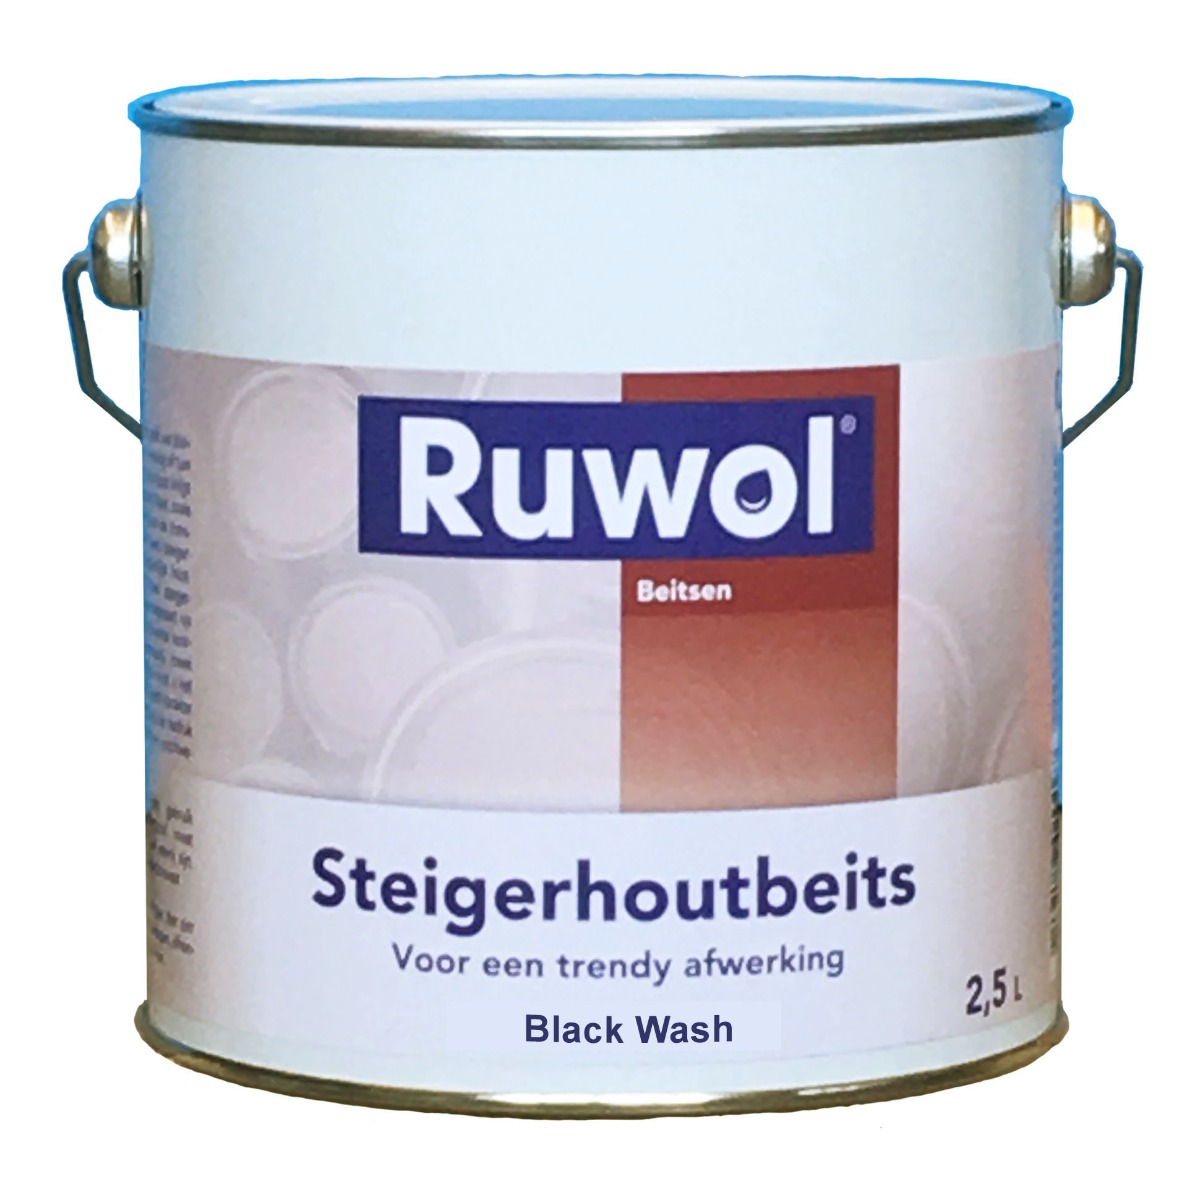 Ruwol Steigerhoutbeits Black Wash 2,5 liter